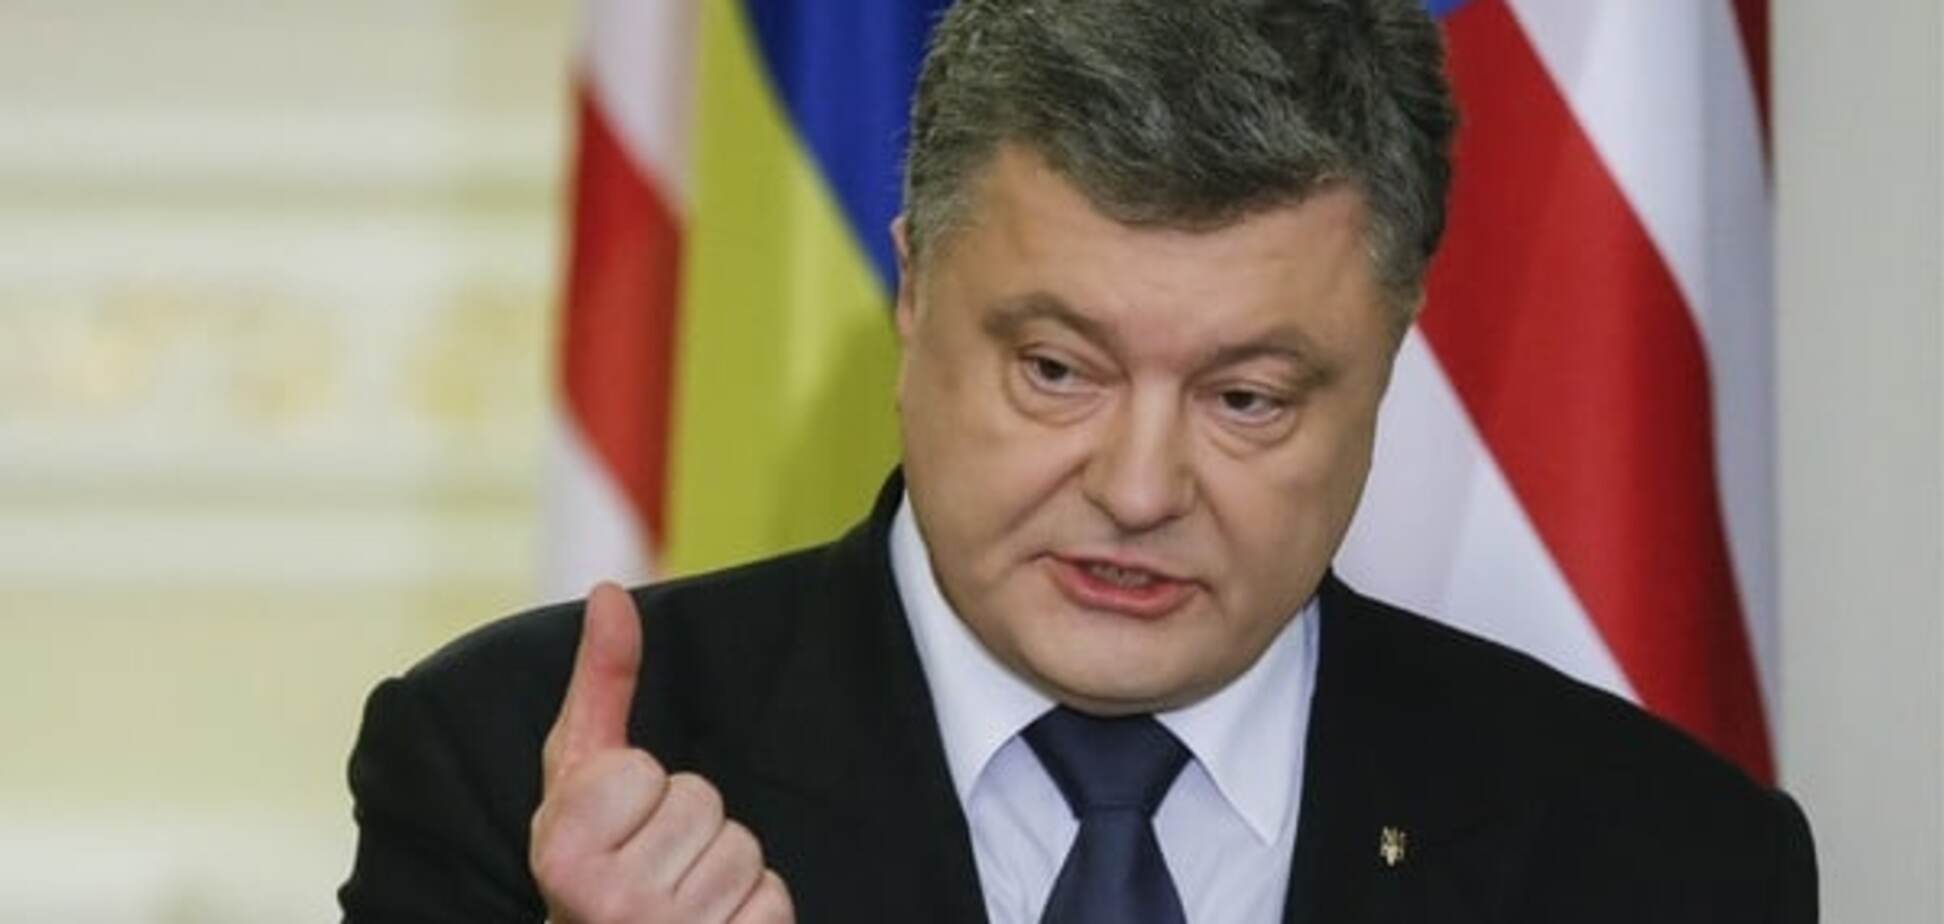 Украина делает все для давления мира на Россию по делу Савченко - Порошенко